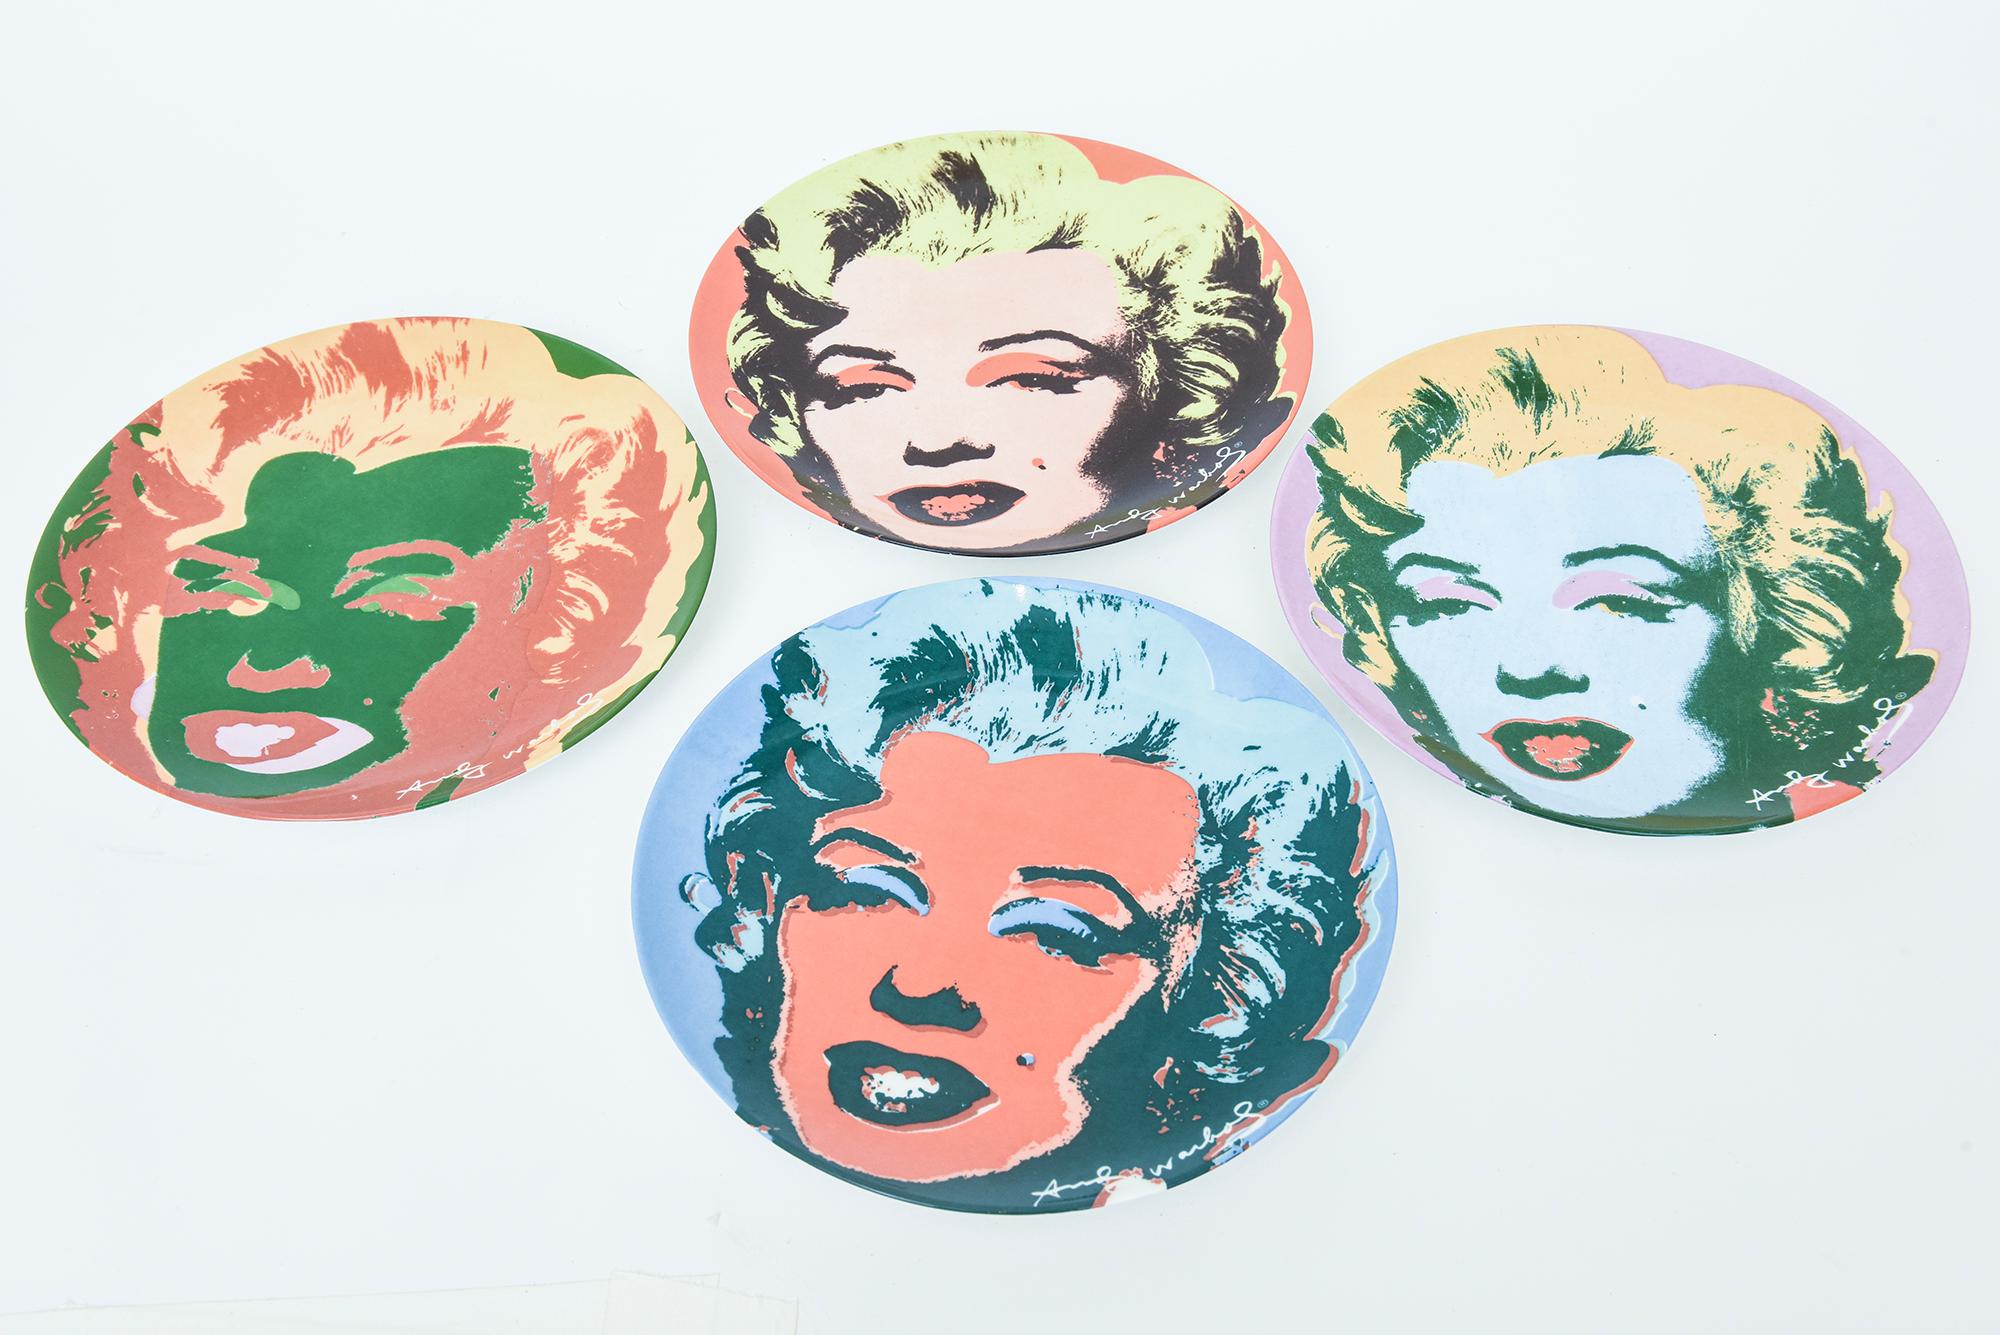 Dieser Satz von 4 Knochen Porzellan Vorspeise, Dessert oder Salatteller oder servieren Stücke sind Andy Warhol 's Marilyn Monroe für Block und von Block Manufacturing alle auf der Rückseite beschriftet und autorisiert durch die Marilyn Monroe